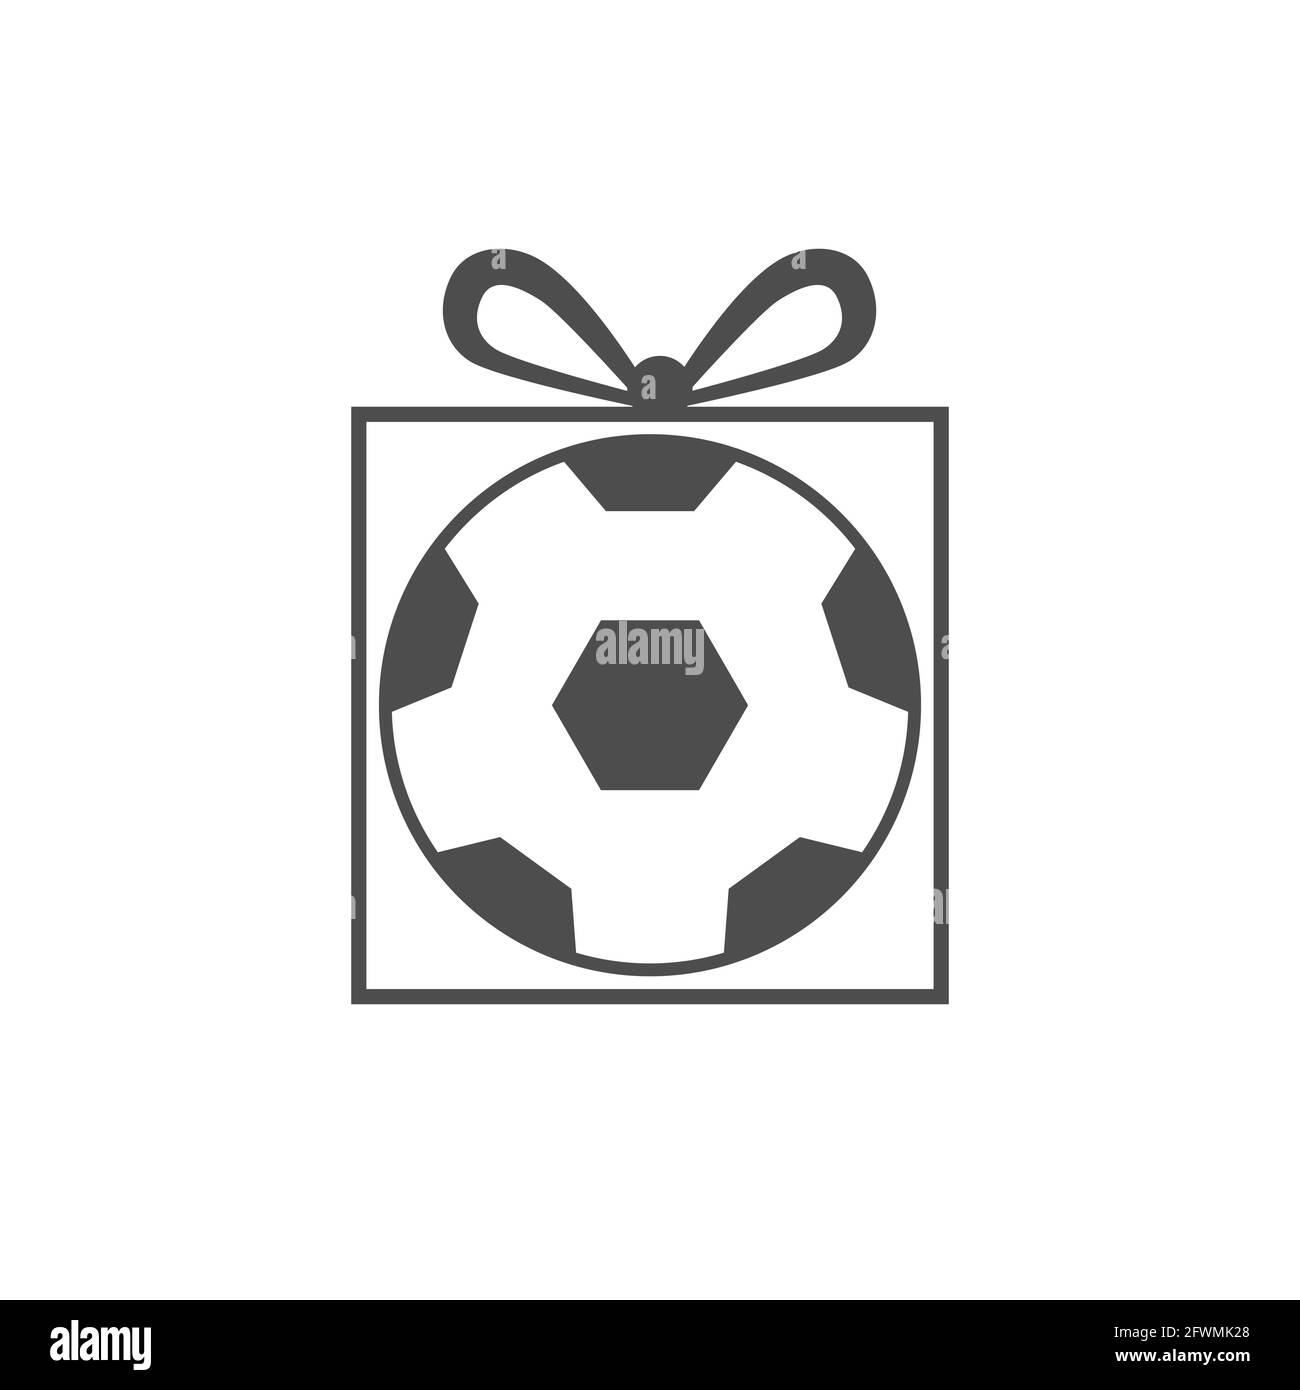 Caja de regalo balon de futbol soccer, Soccer Ball Gift Box 